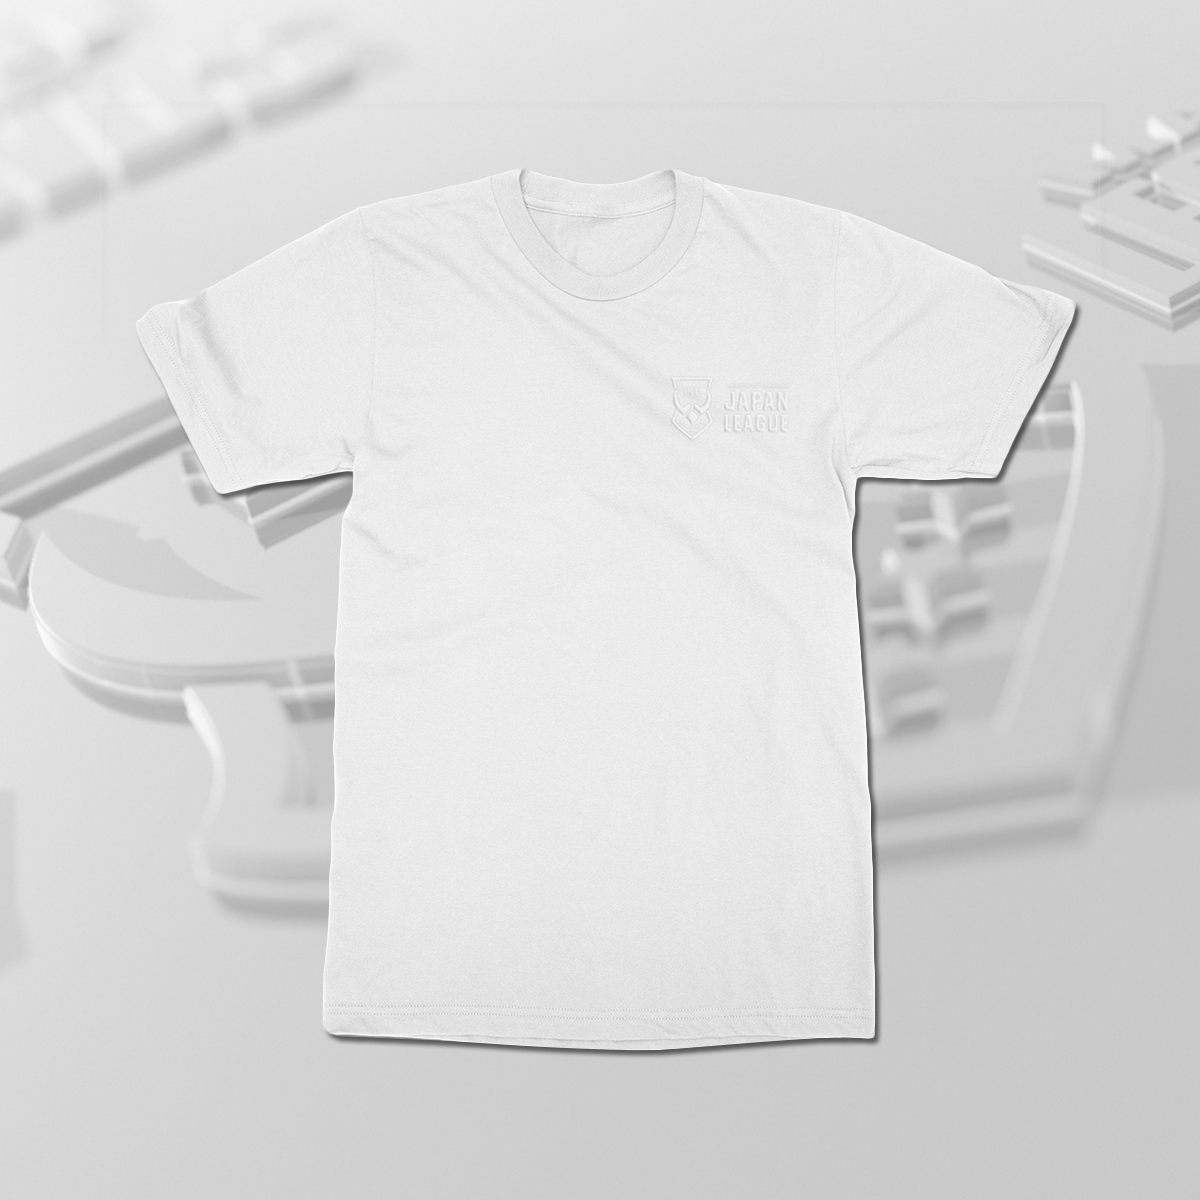 LJL League T-shirt (White)